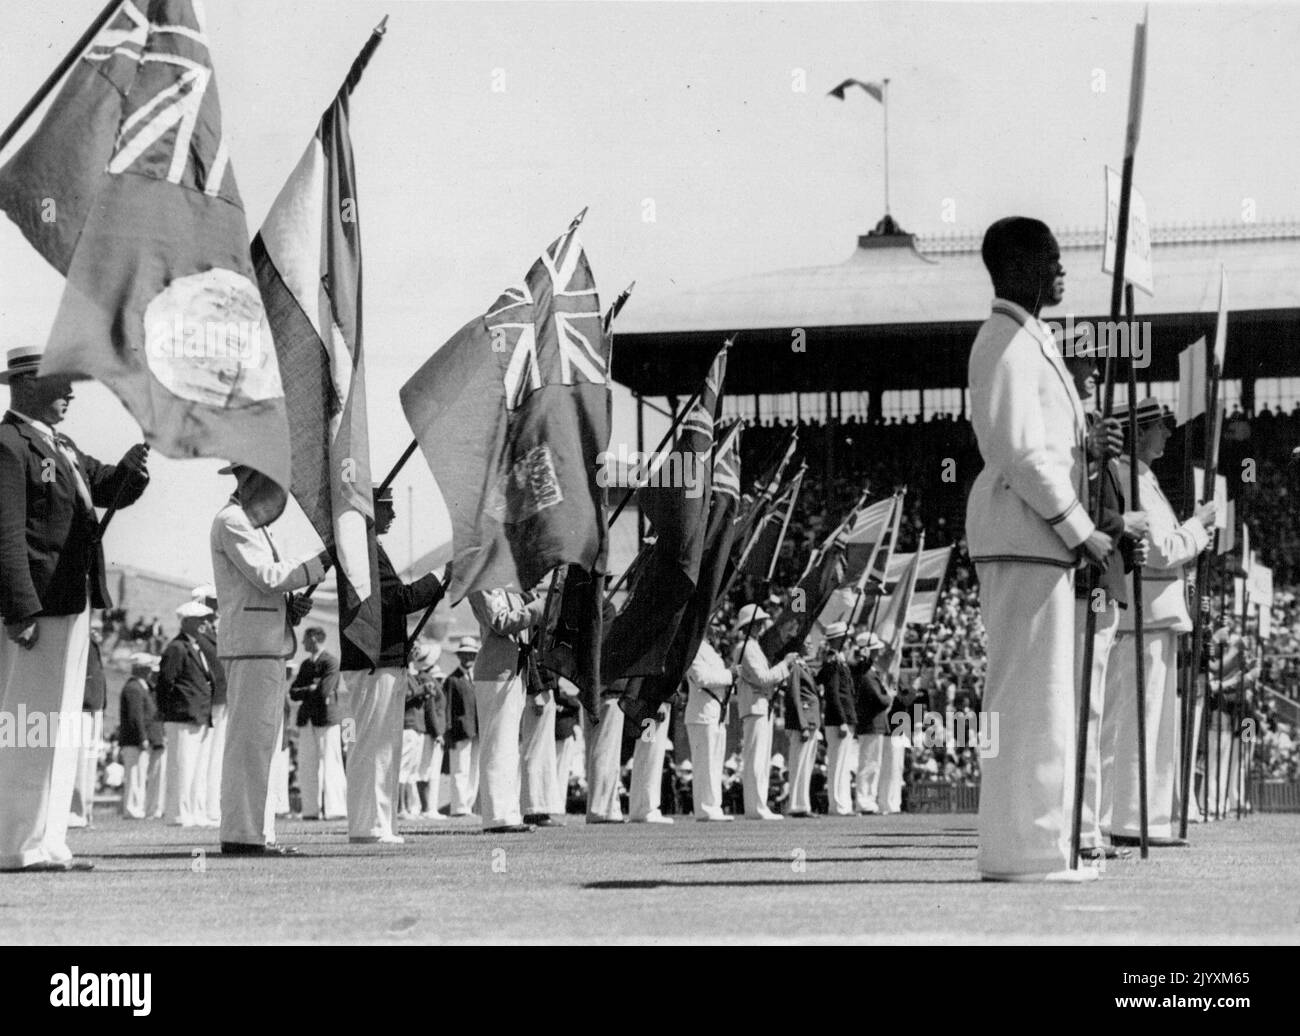 Empire Games al Sydney Cricket Ground le bandiere delle nazioni dell'Impero colorarono il Sydney Cricket Ground quando i primi Giochi dell'Impero d'Australia furono aperti prima del Covernor del nuovo Galles del Sud, Lord Wakehurst. Mentre suonavano le band e suonavano le trombe, i come furono lanciati davanti ad una folla enorme. Luglio 18, 1938. Foto Stock